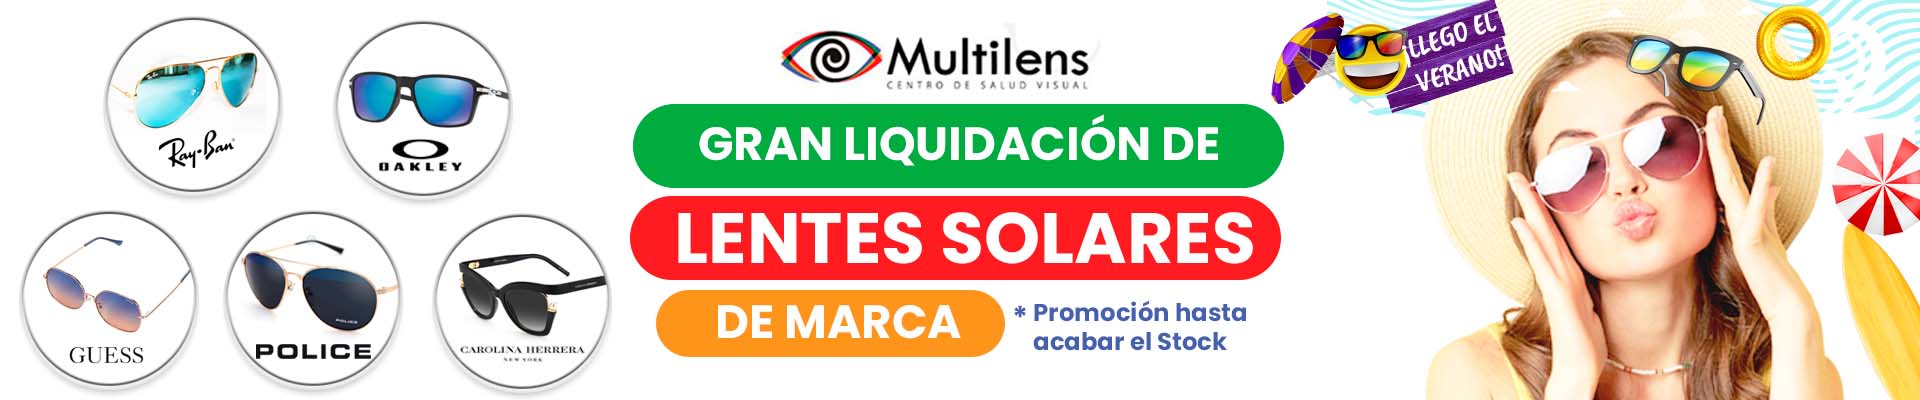 Lentes solares de marca Multilens